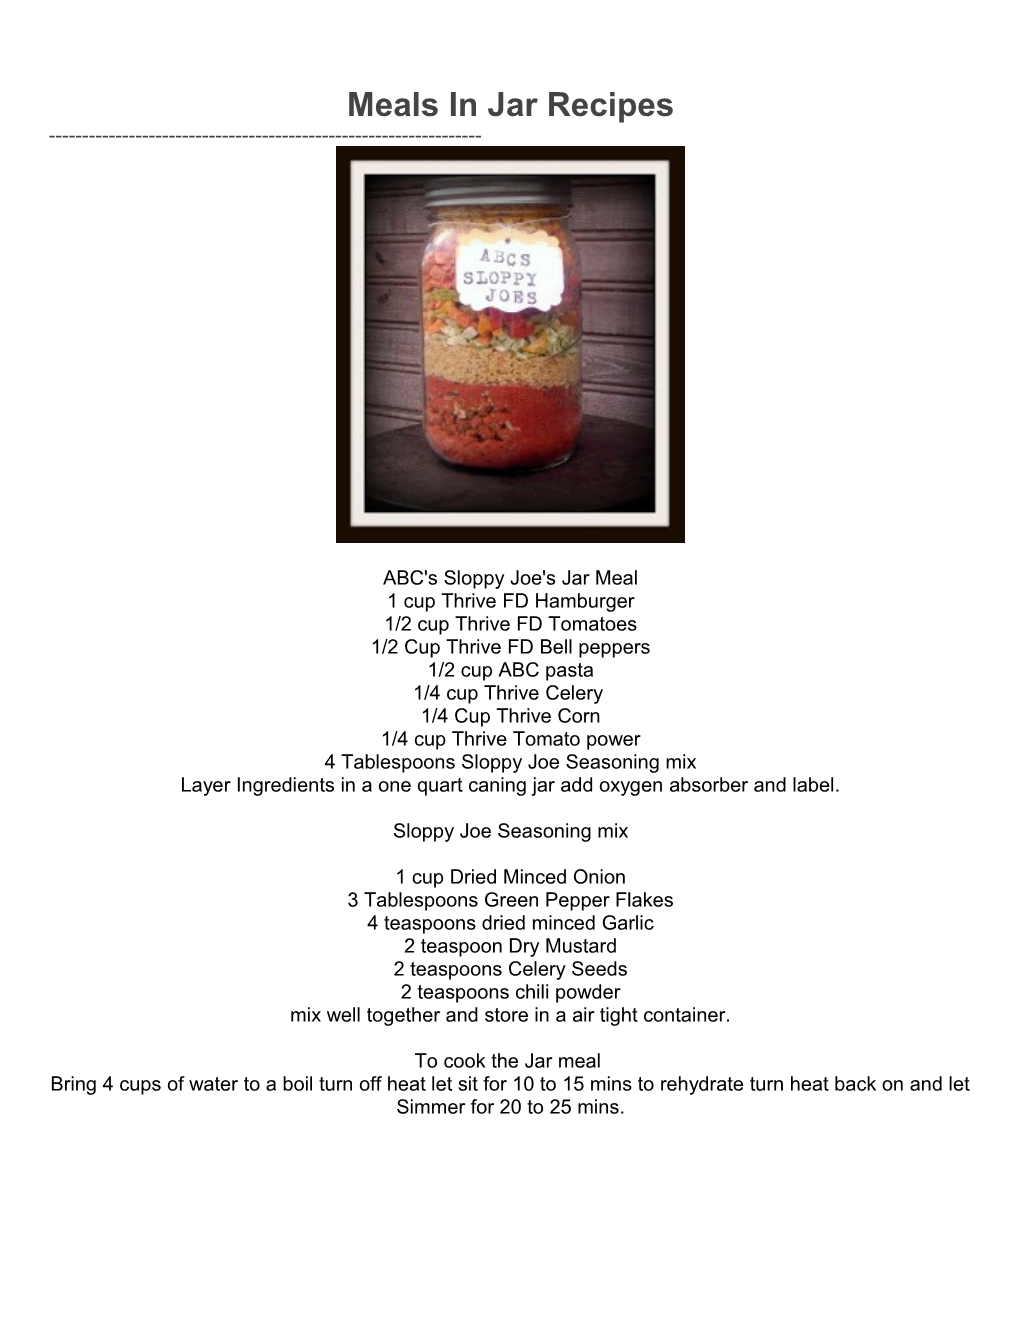 Meals in Jar Recipes